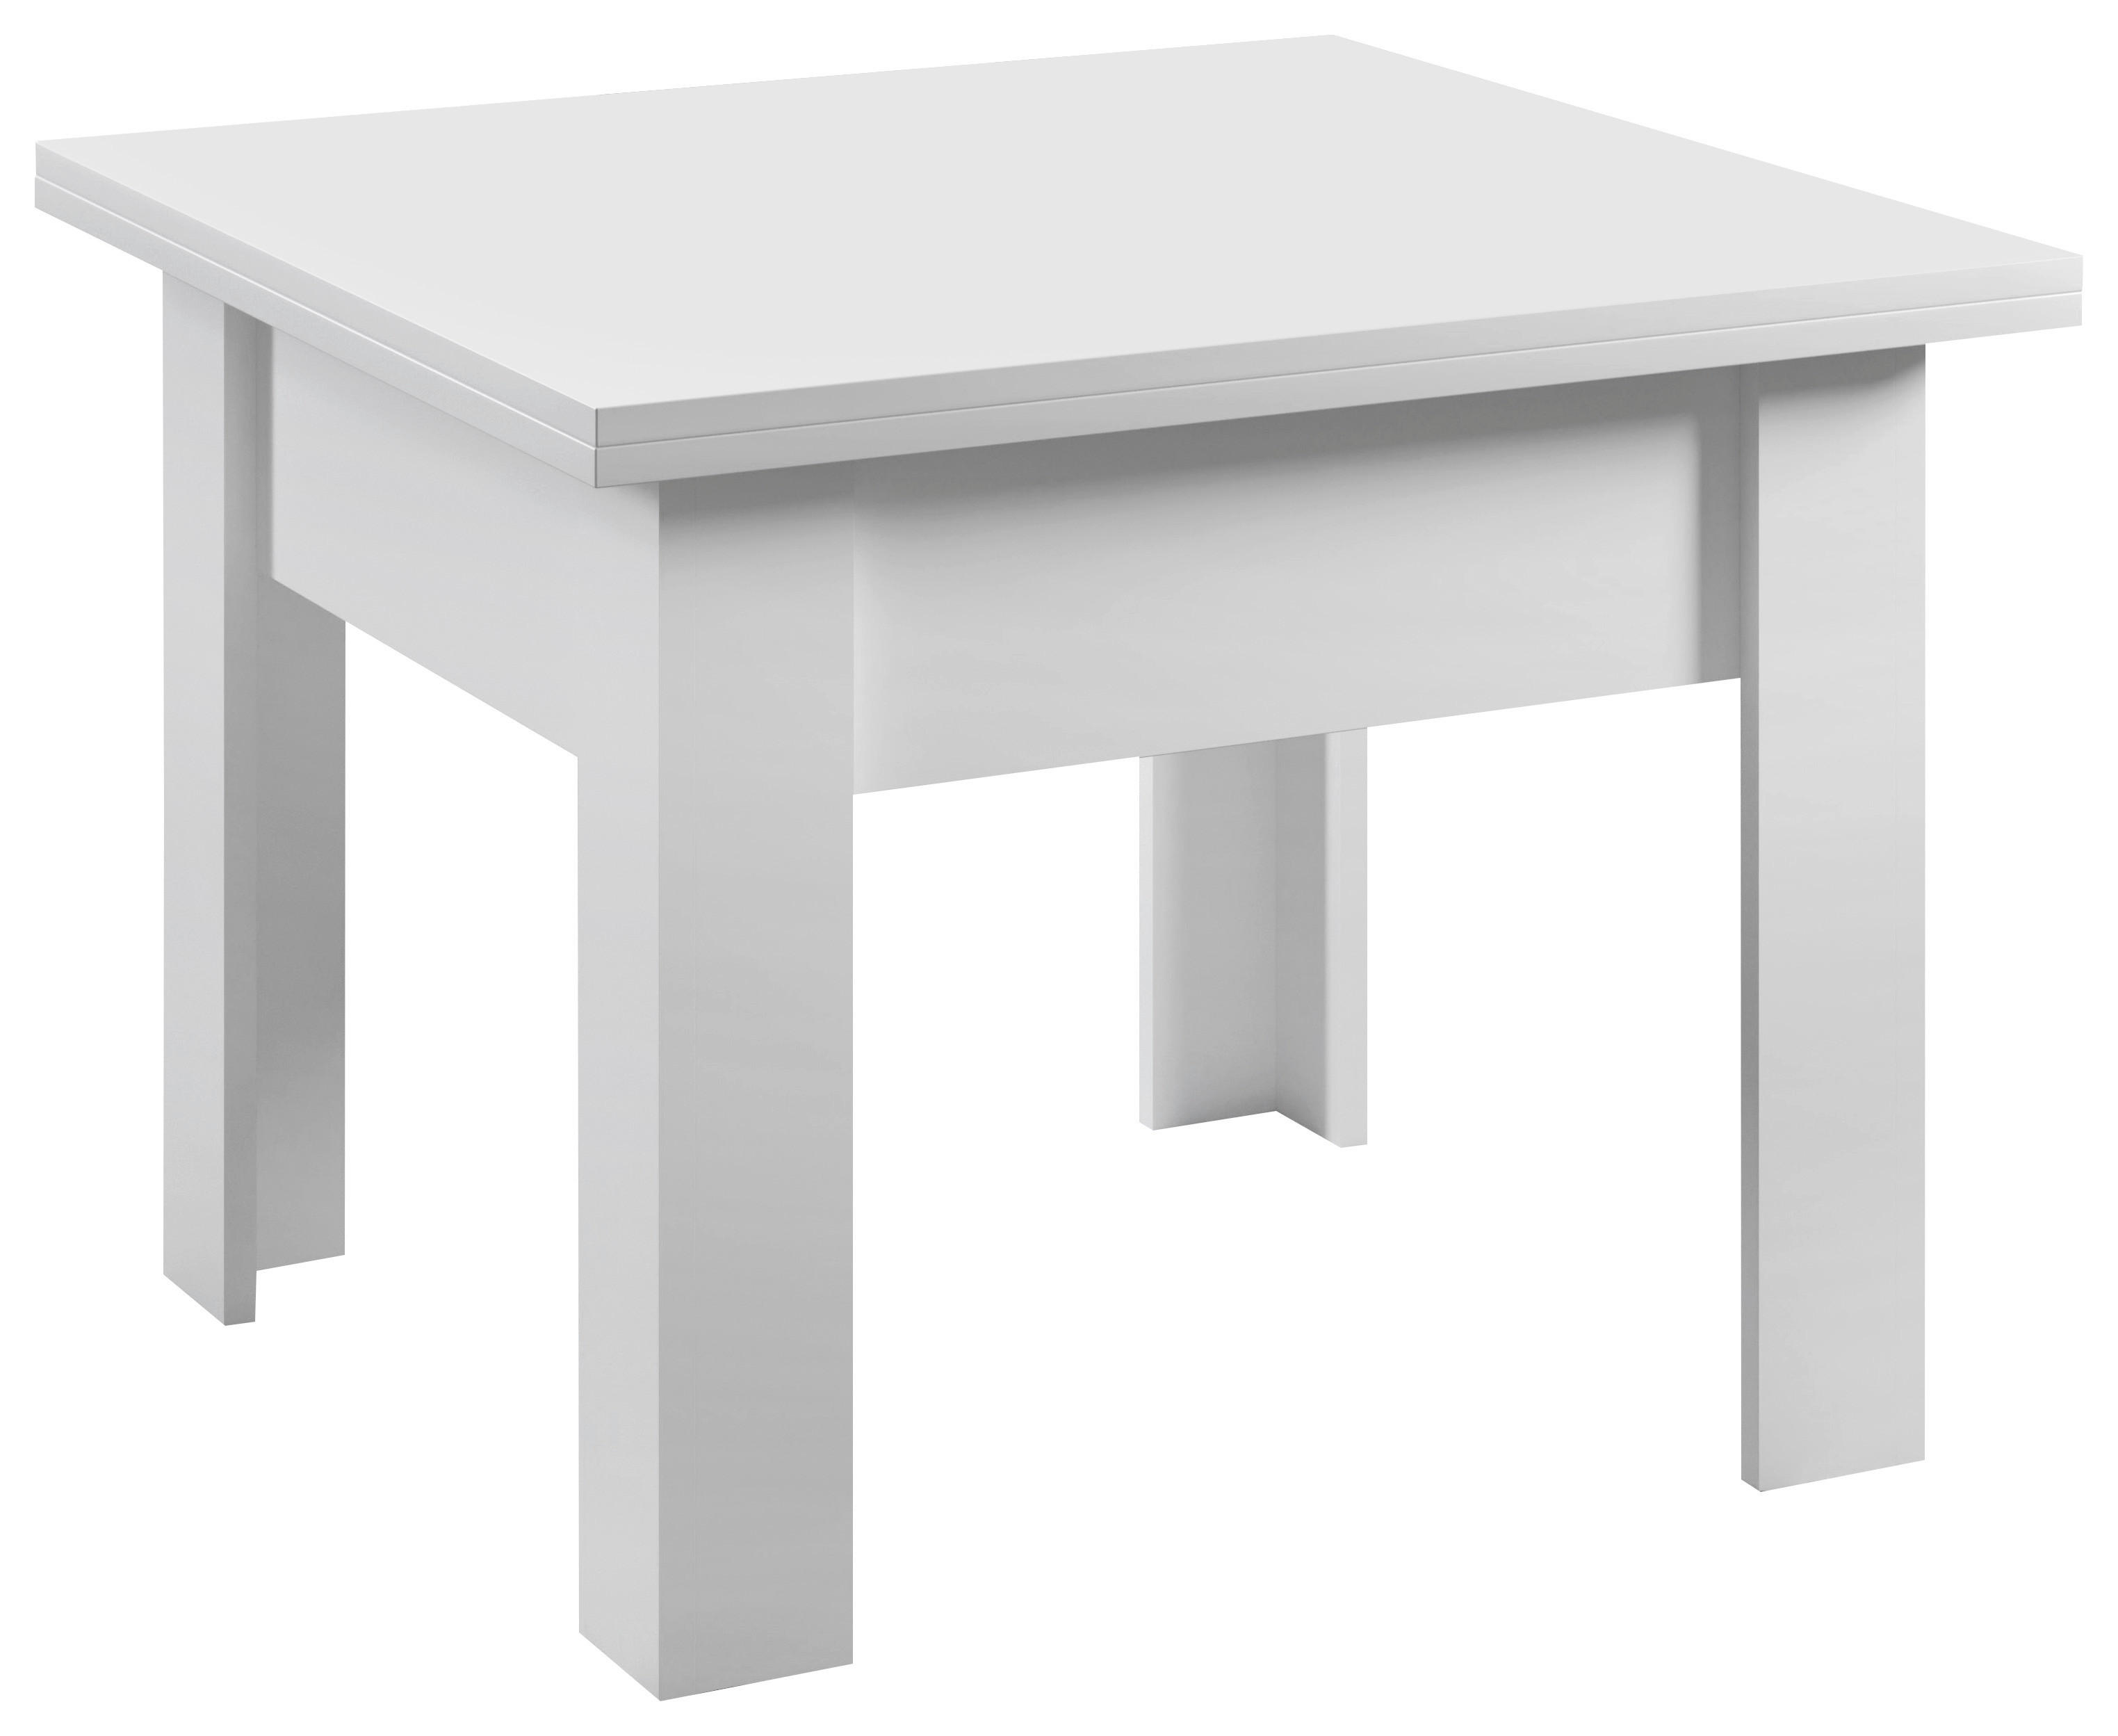 COUCHTISCH quadratisch Weiß 70-140/70/57-77 cm  - Weiß, Design (70-140/70/57-77cm) - Carryhome